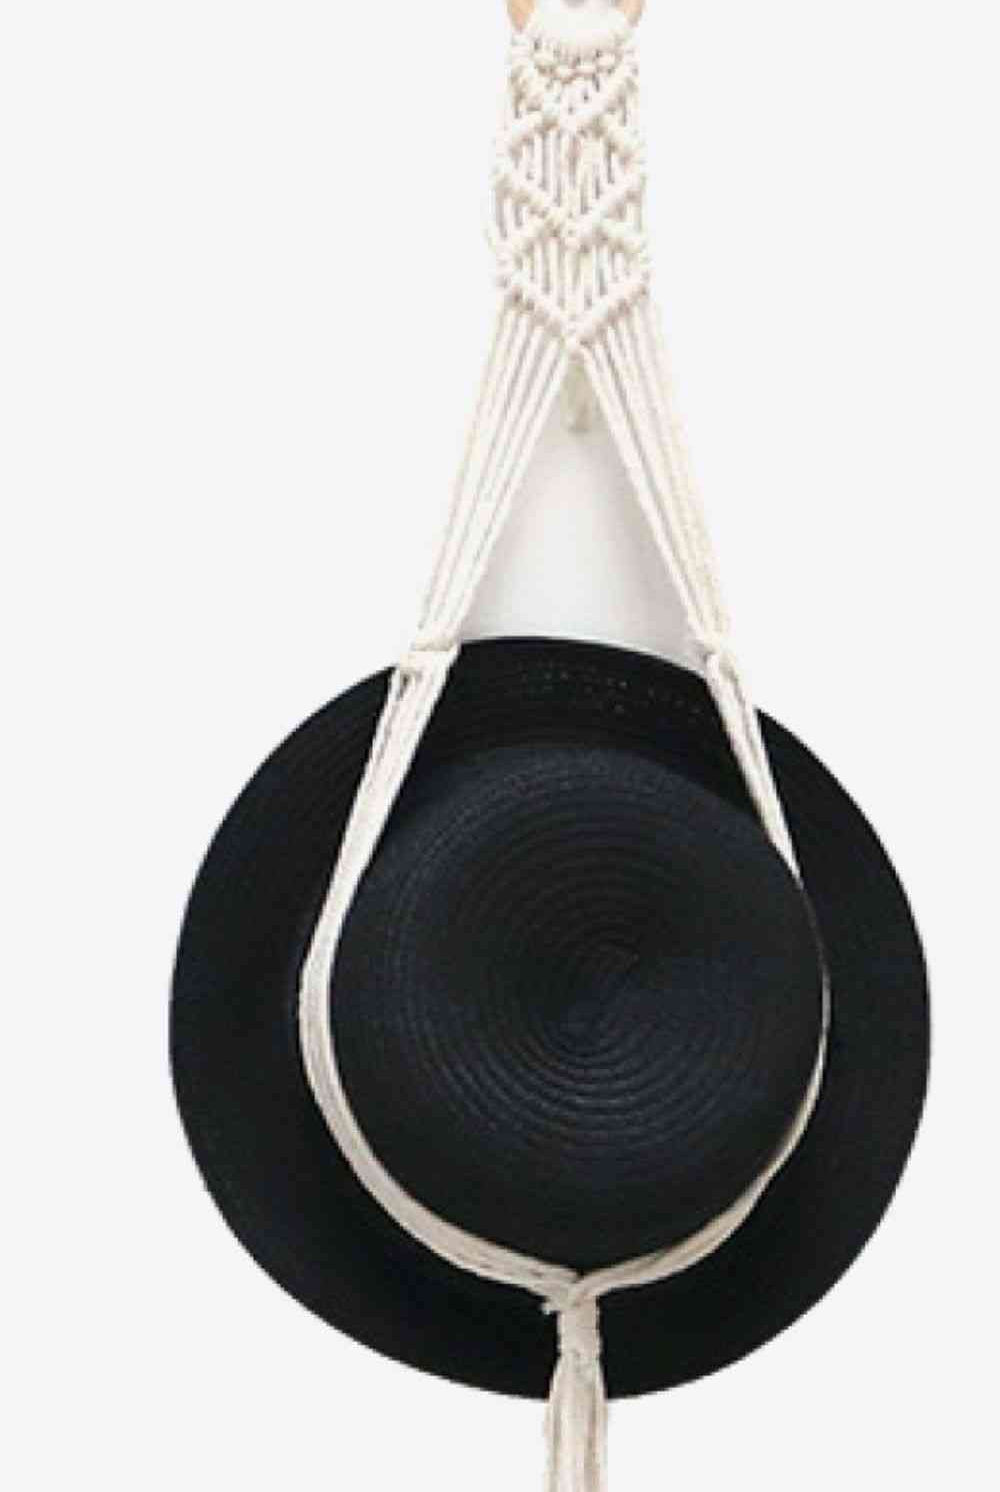 White Smoke Macrame Hat Hanger Gifts